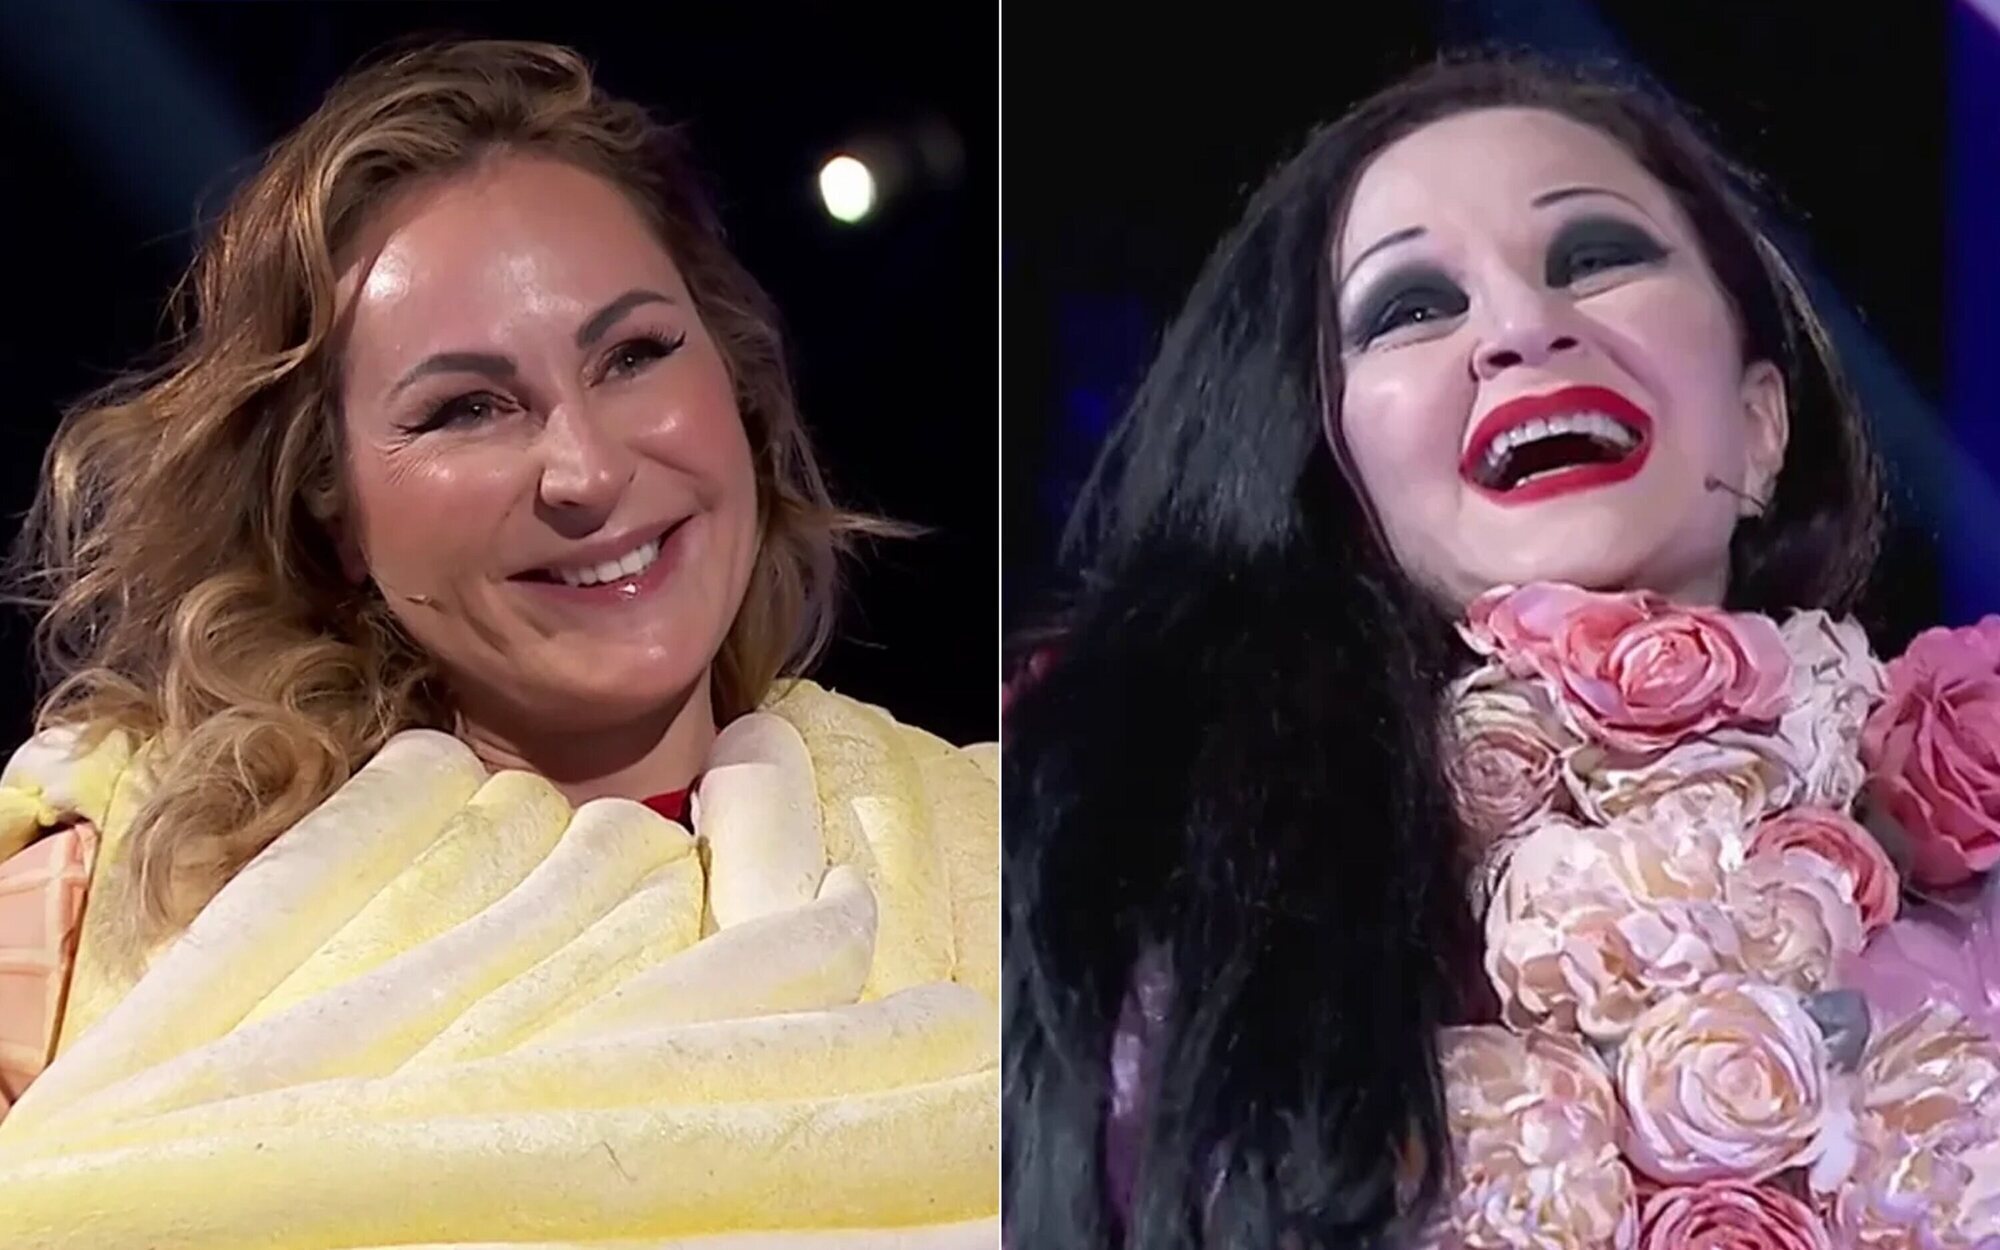 Ana Milán y Alaska tomarán el relevo de Ana Obregón y Mónica Naranjo en 'Mask Singer 4'